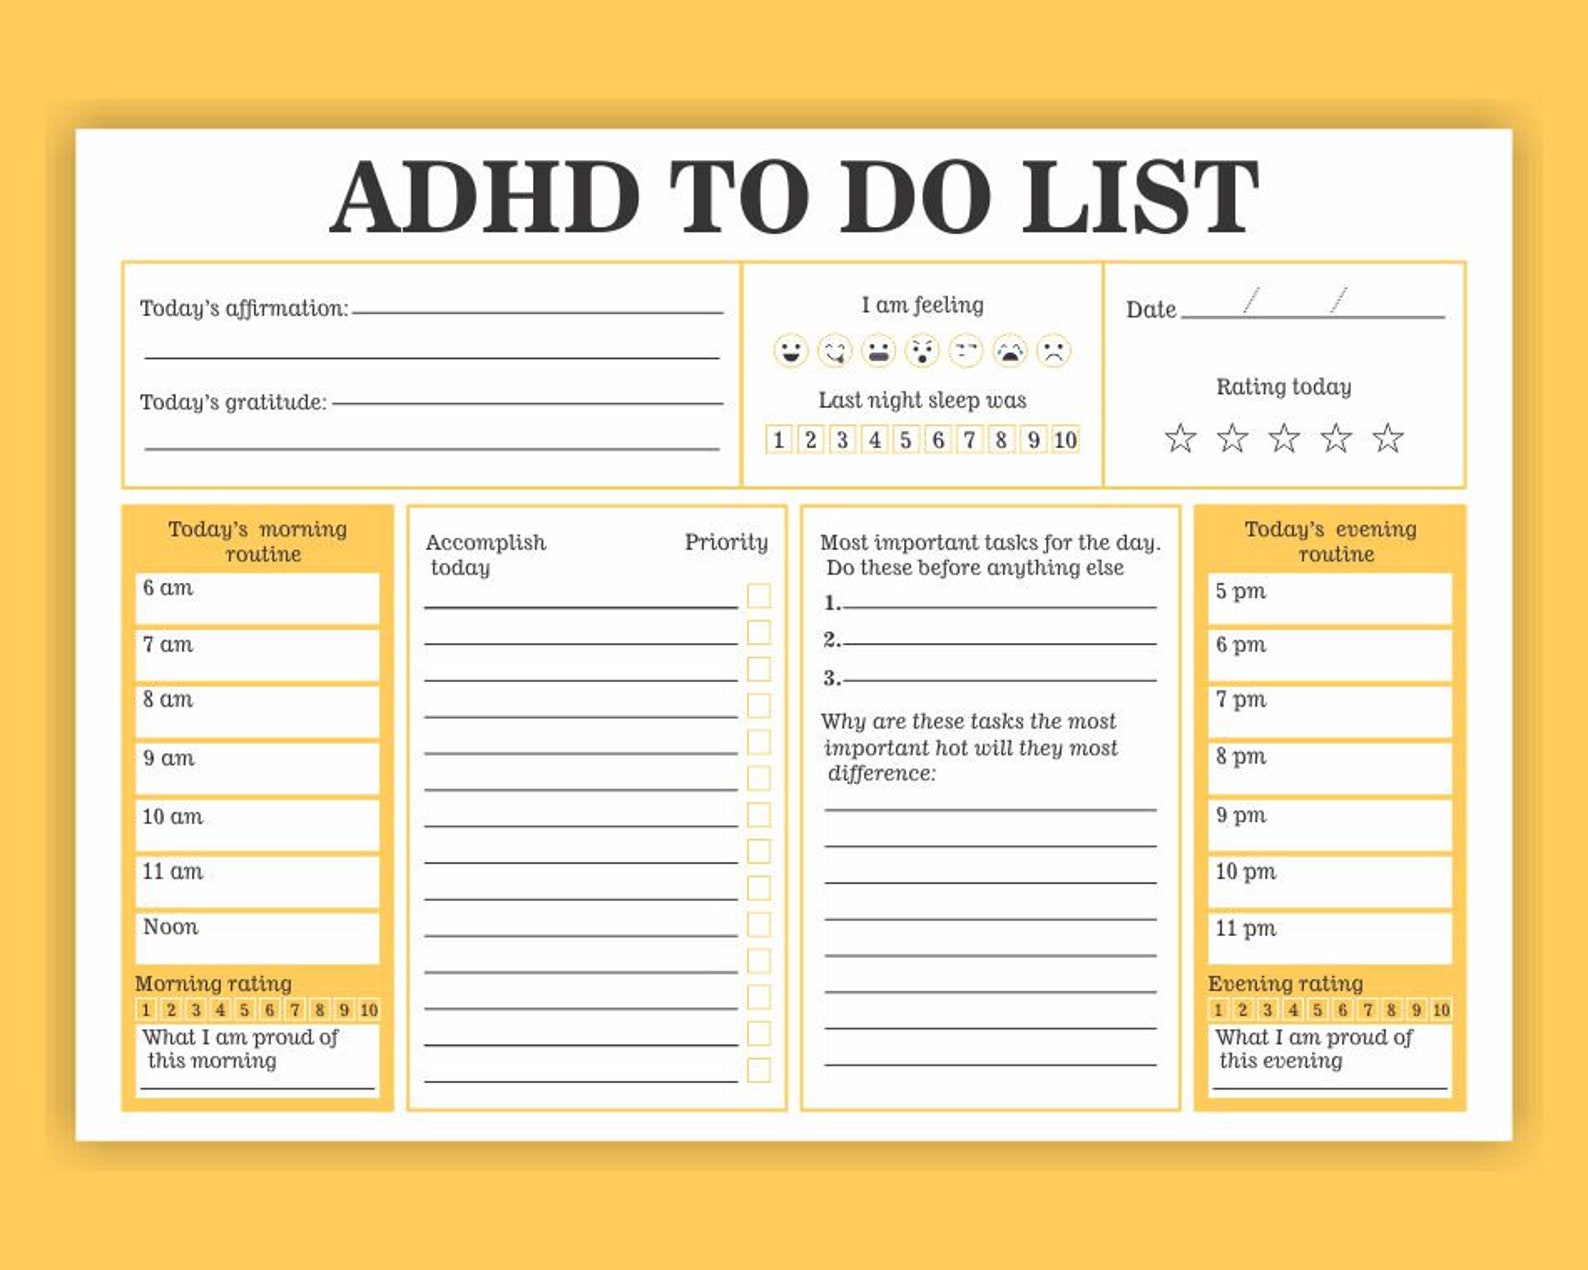 adhd-to-do-list-planner-printable-adhd-digital-planner-pdf-etsy